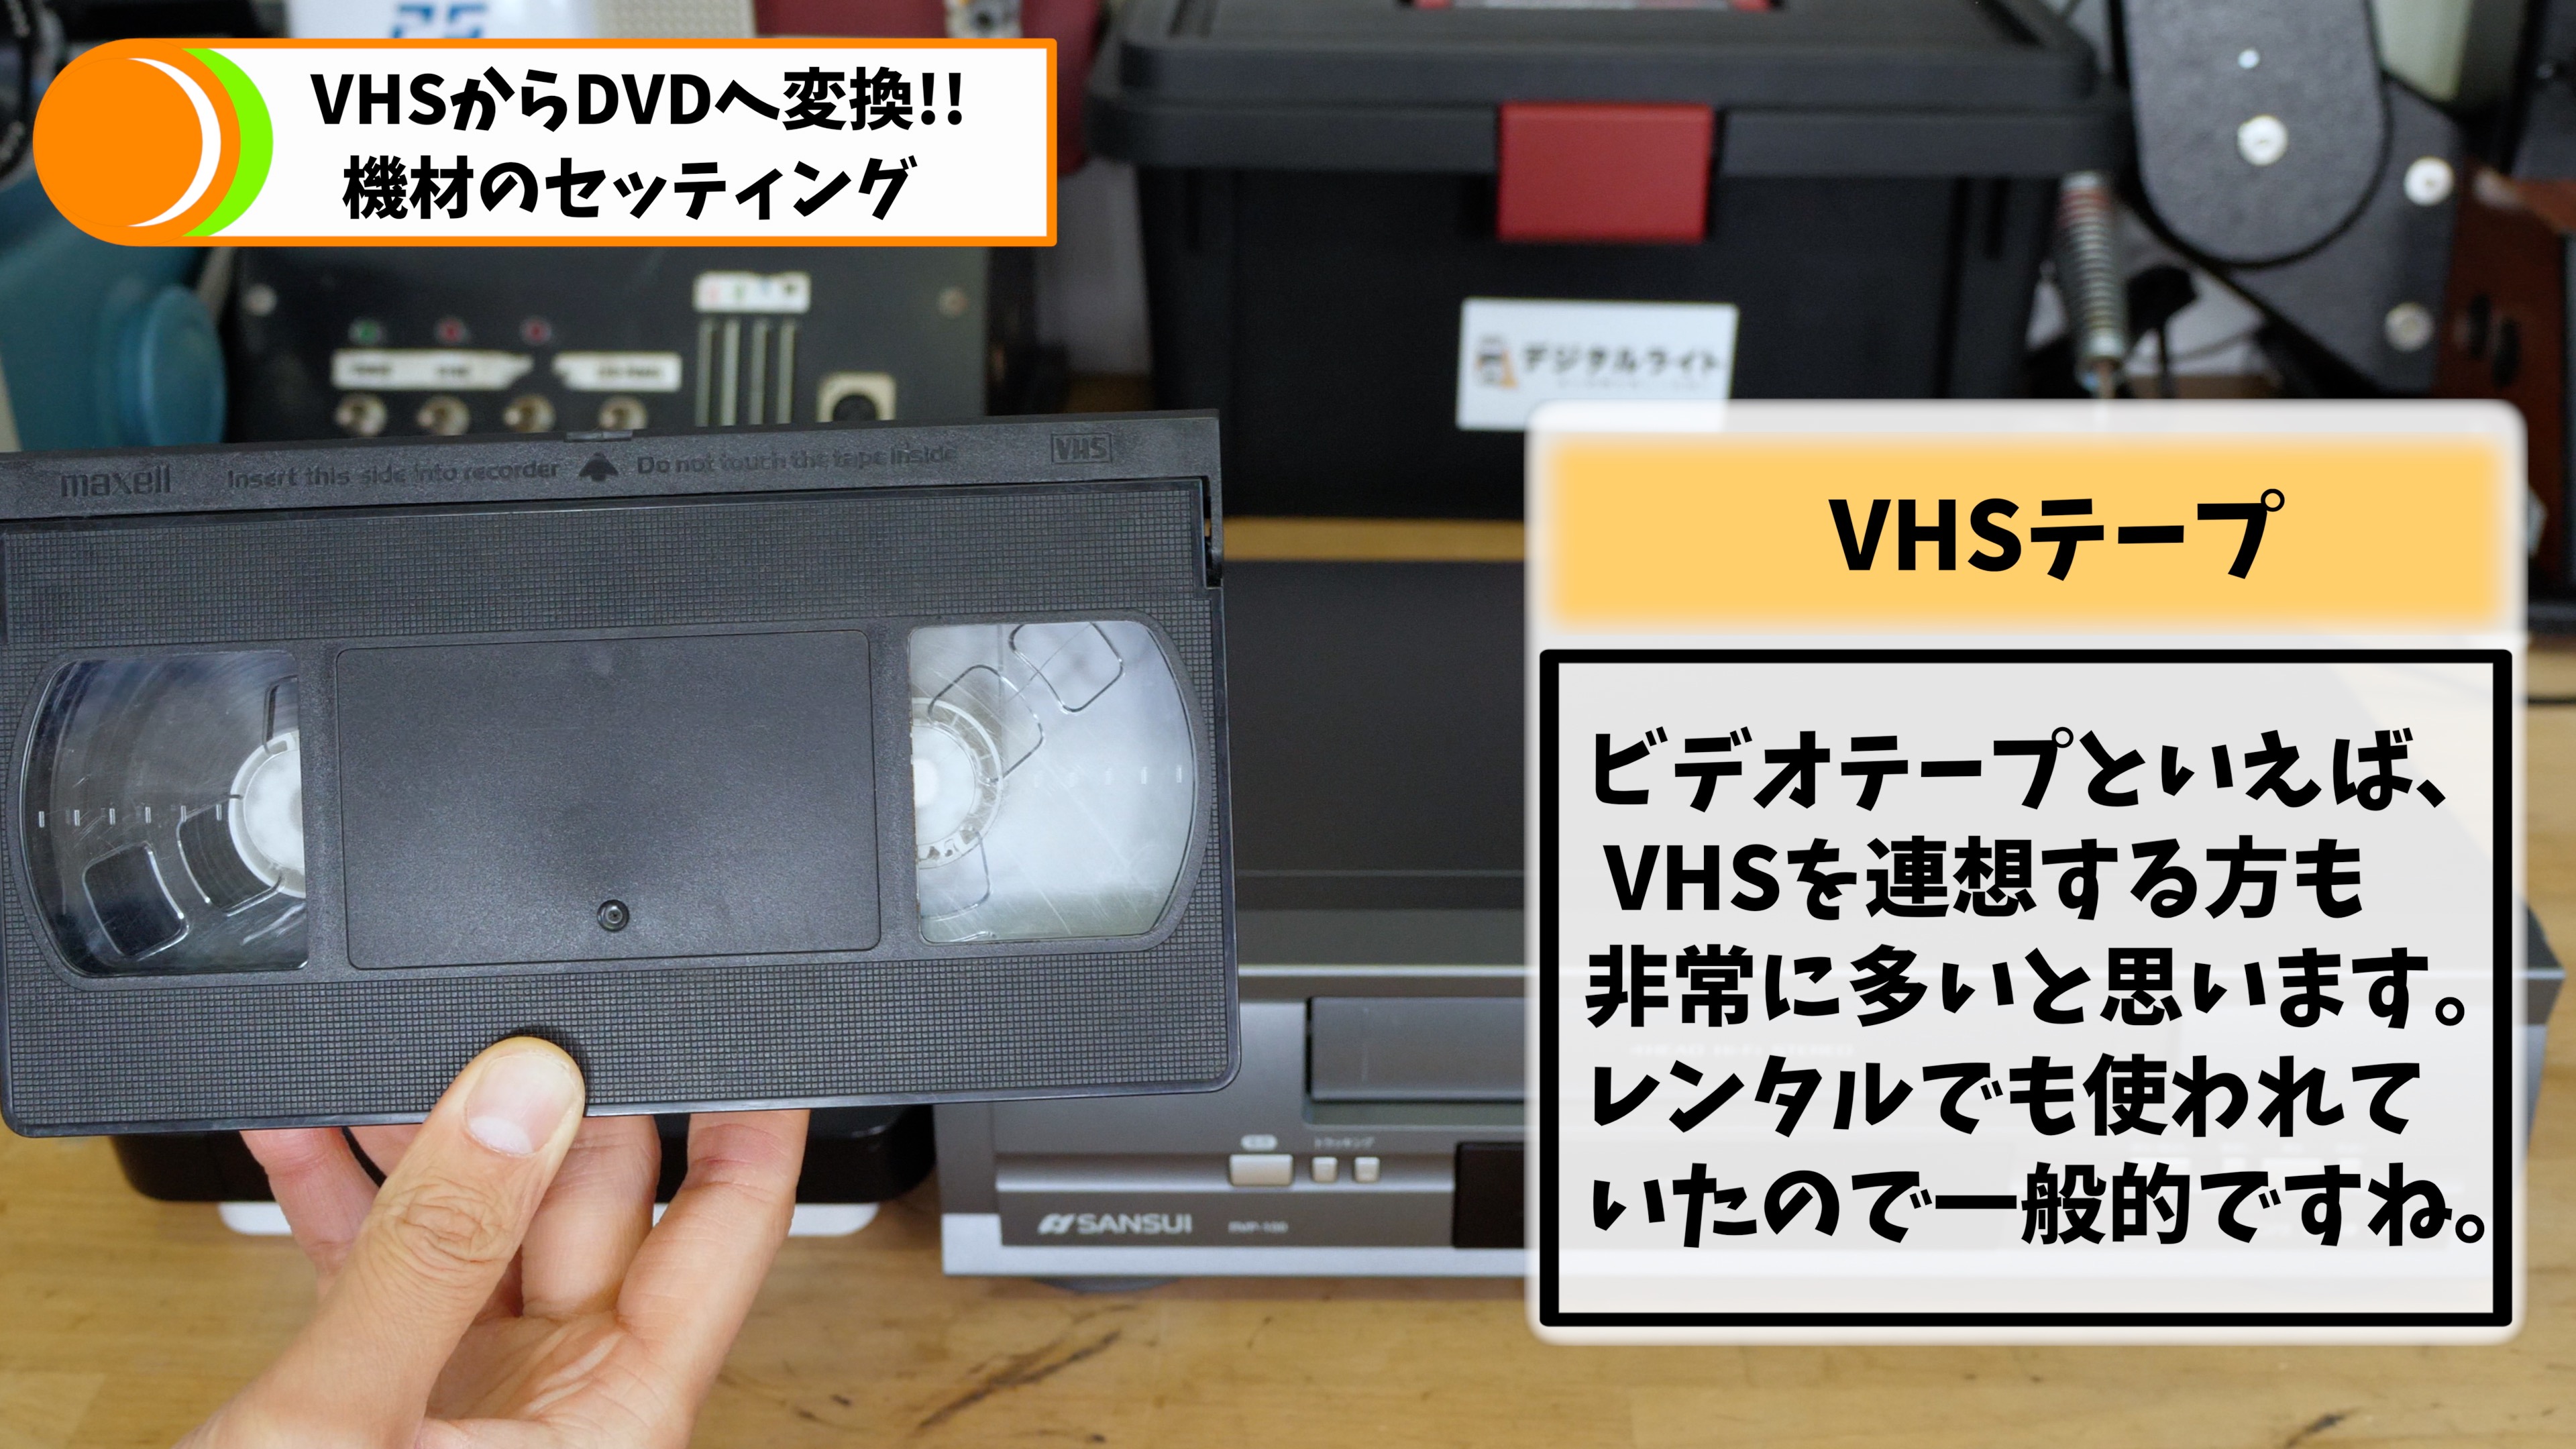 猛獣大脱走 VHS ビデオテープ DVD廃盤